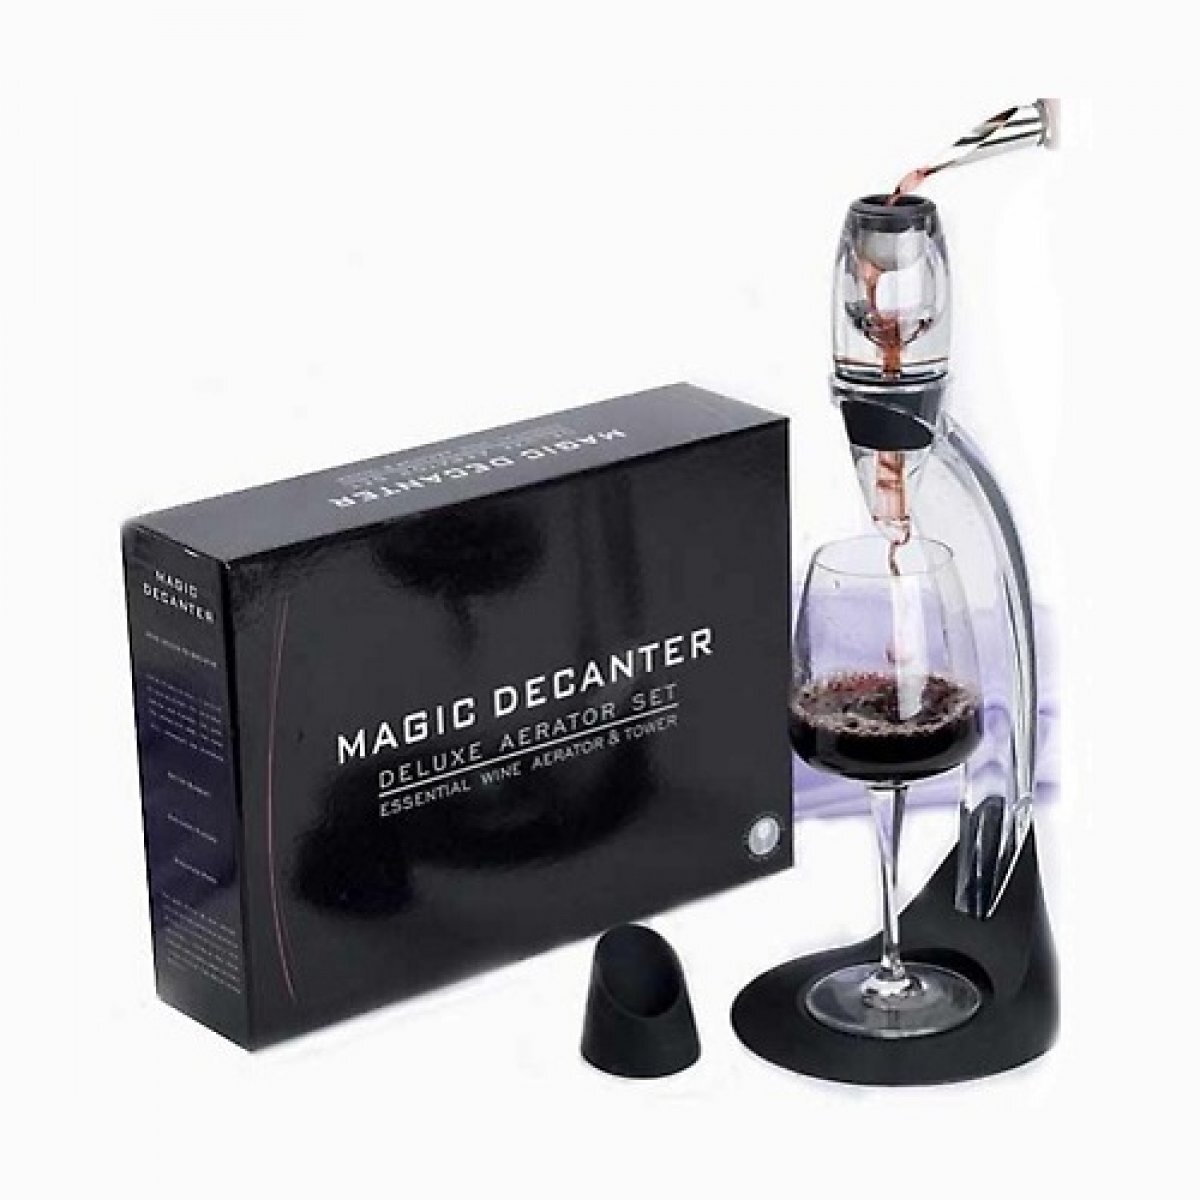 Аэратор для вина Magic Decanter Delux Aerator Set